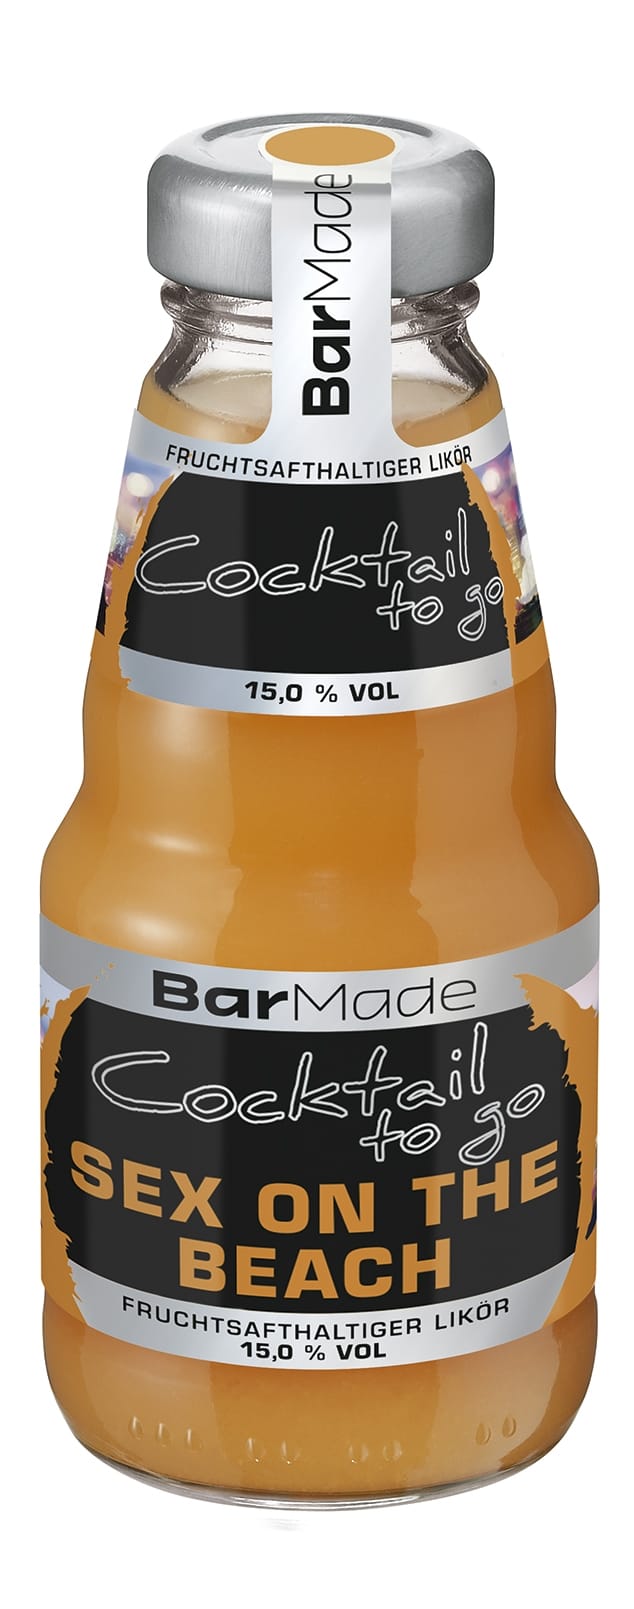 Raus aus dem Getränkeshop, rein ins Glas: "Bar Made"-Cocktails in 0,2-L-Einwegflaschen sollen Genuss ohne Können möglich machen.